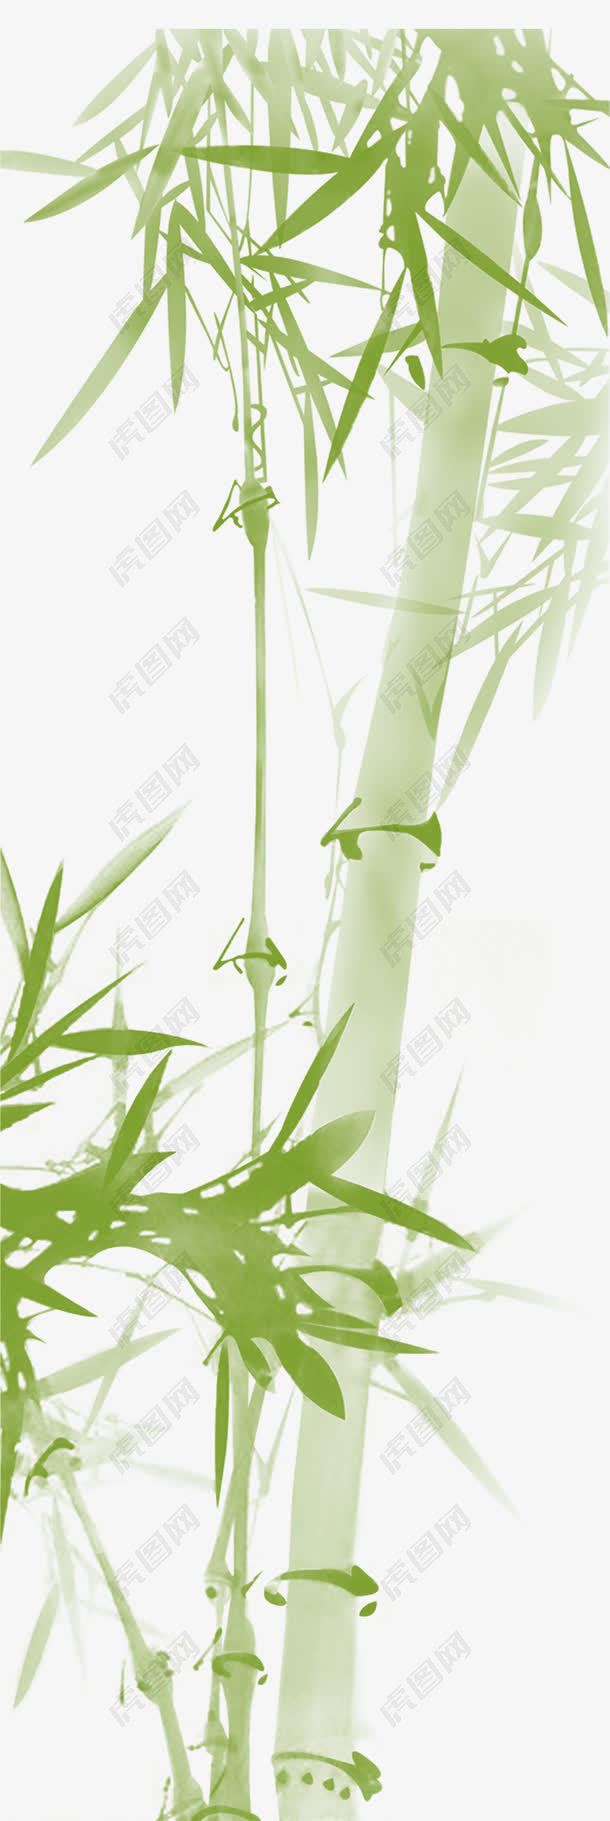 淡绿色的竹子